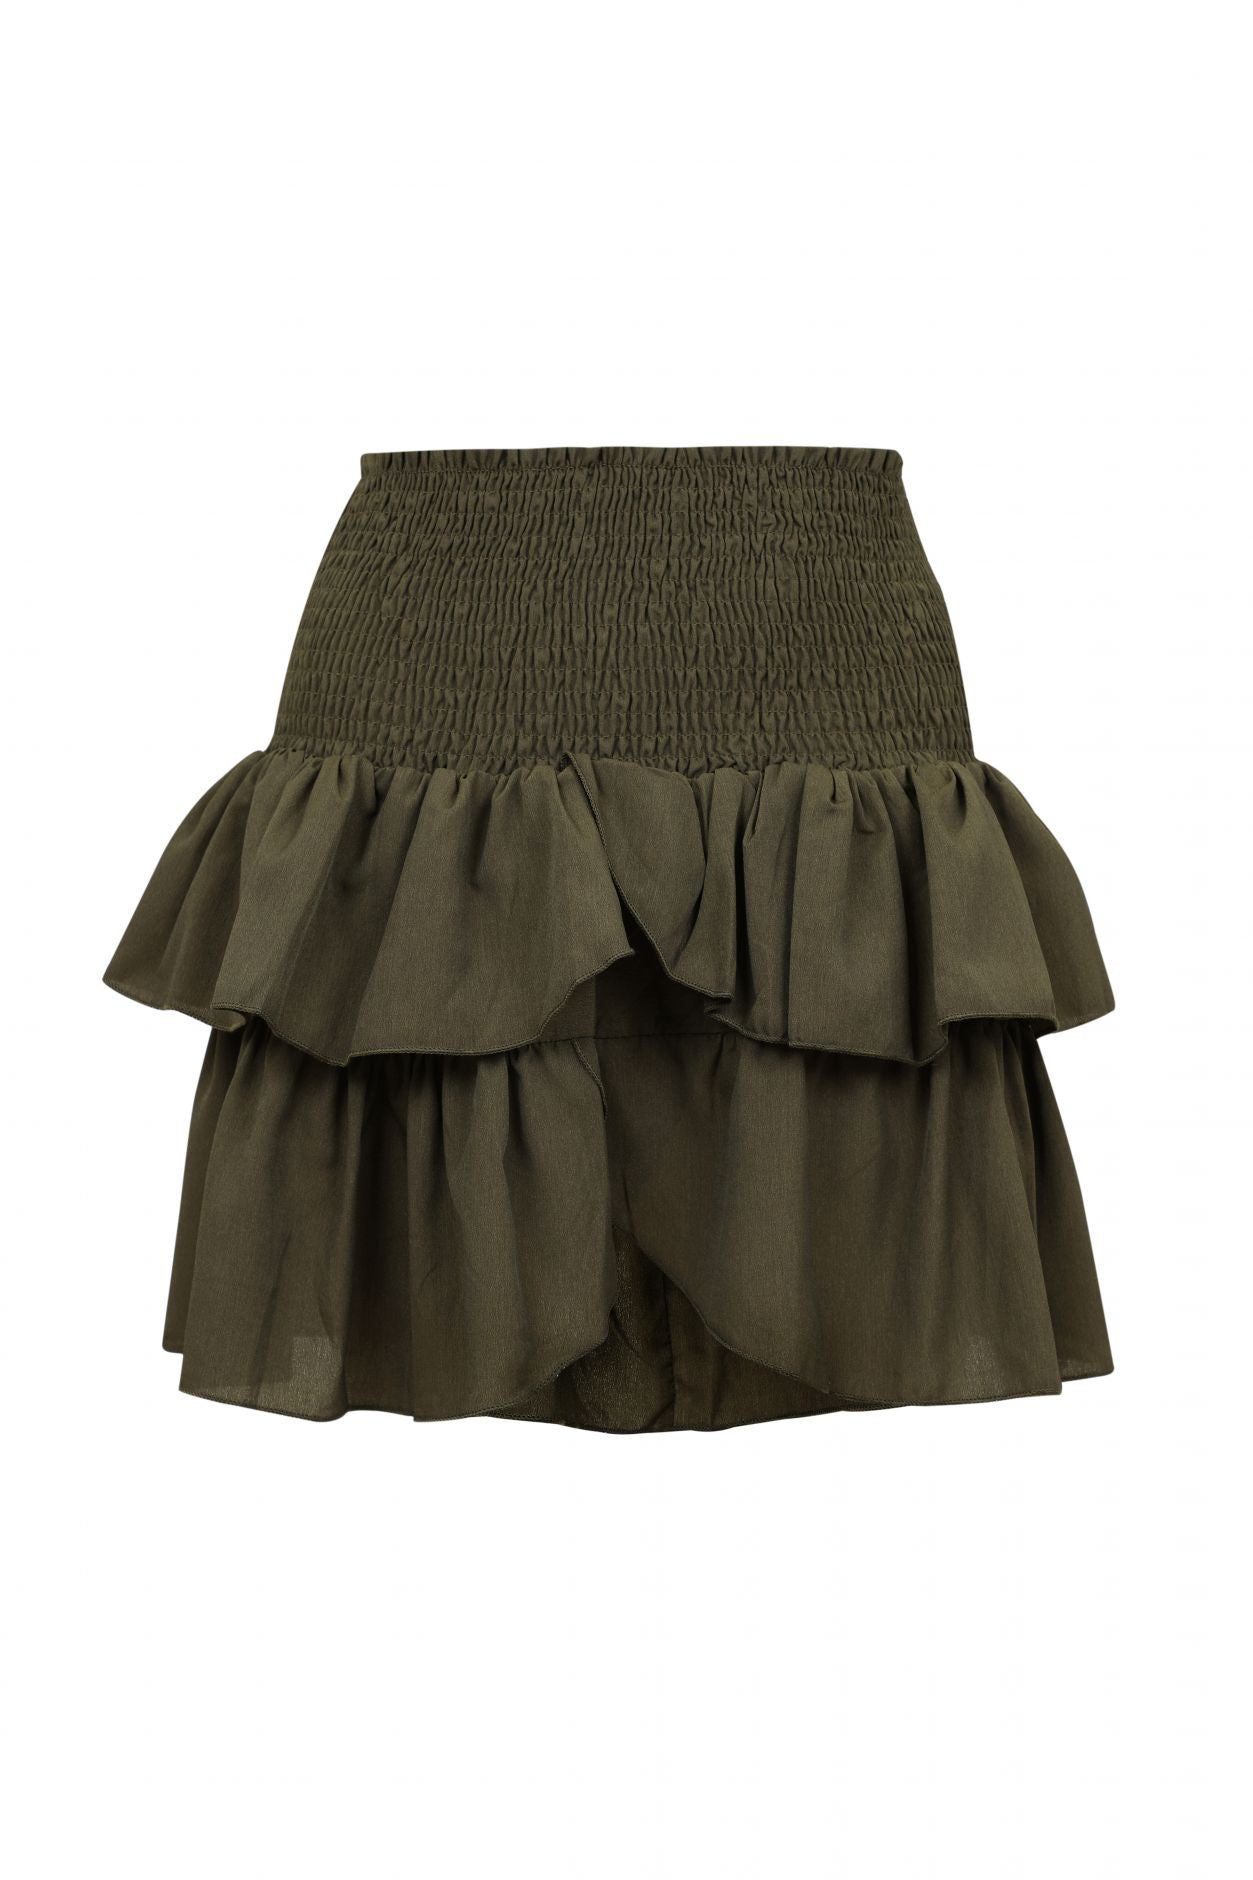 Carin Skirt - Army VILLOID